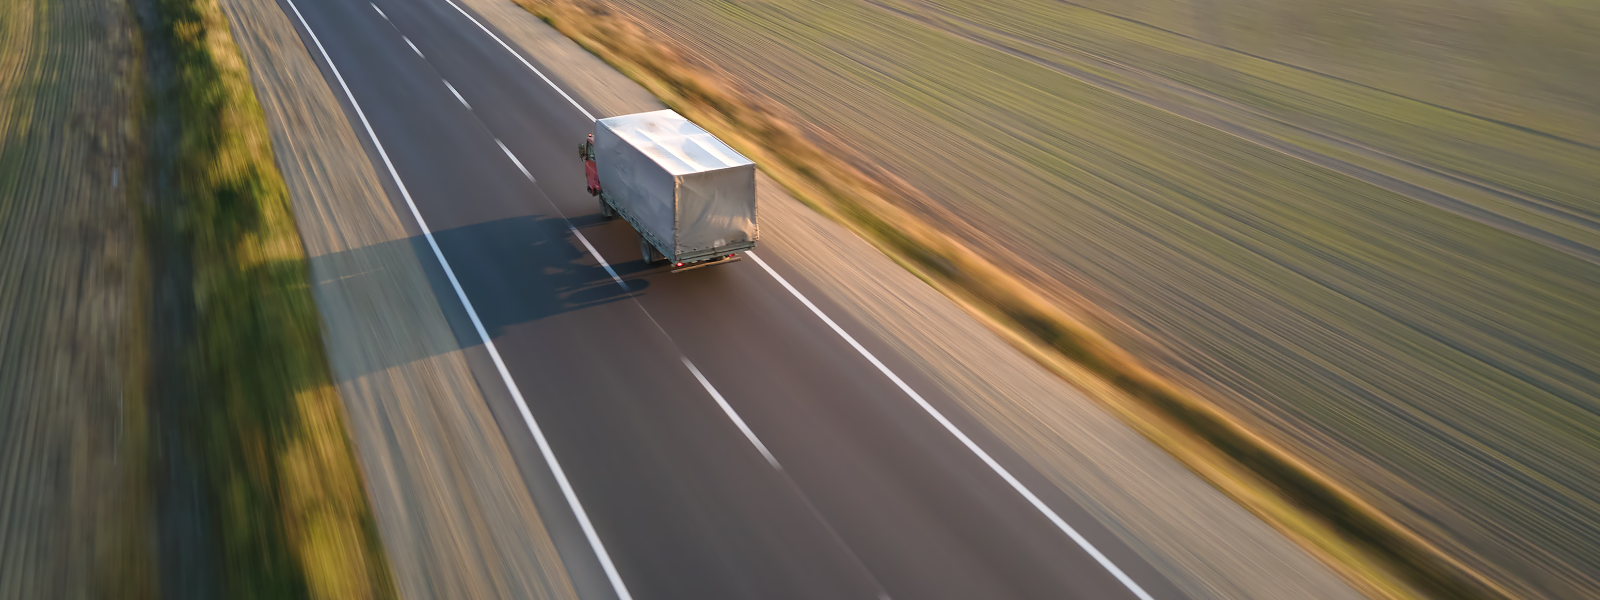 TEKTRANS OÜ - Pakume kaubaveoteenuseid, sealhulgas ohtlike ainete käitlemist, pühendudes ohutusele ja usaldusväärsusele.